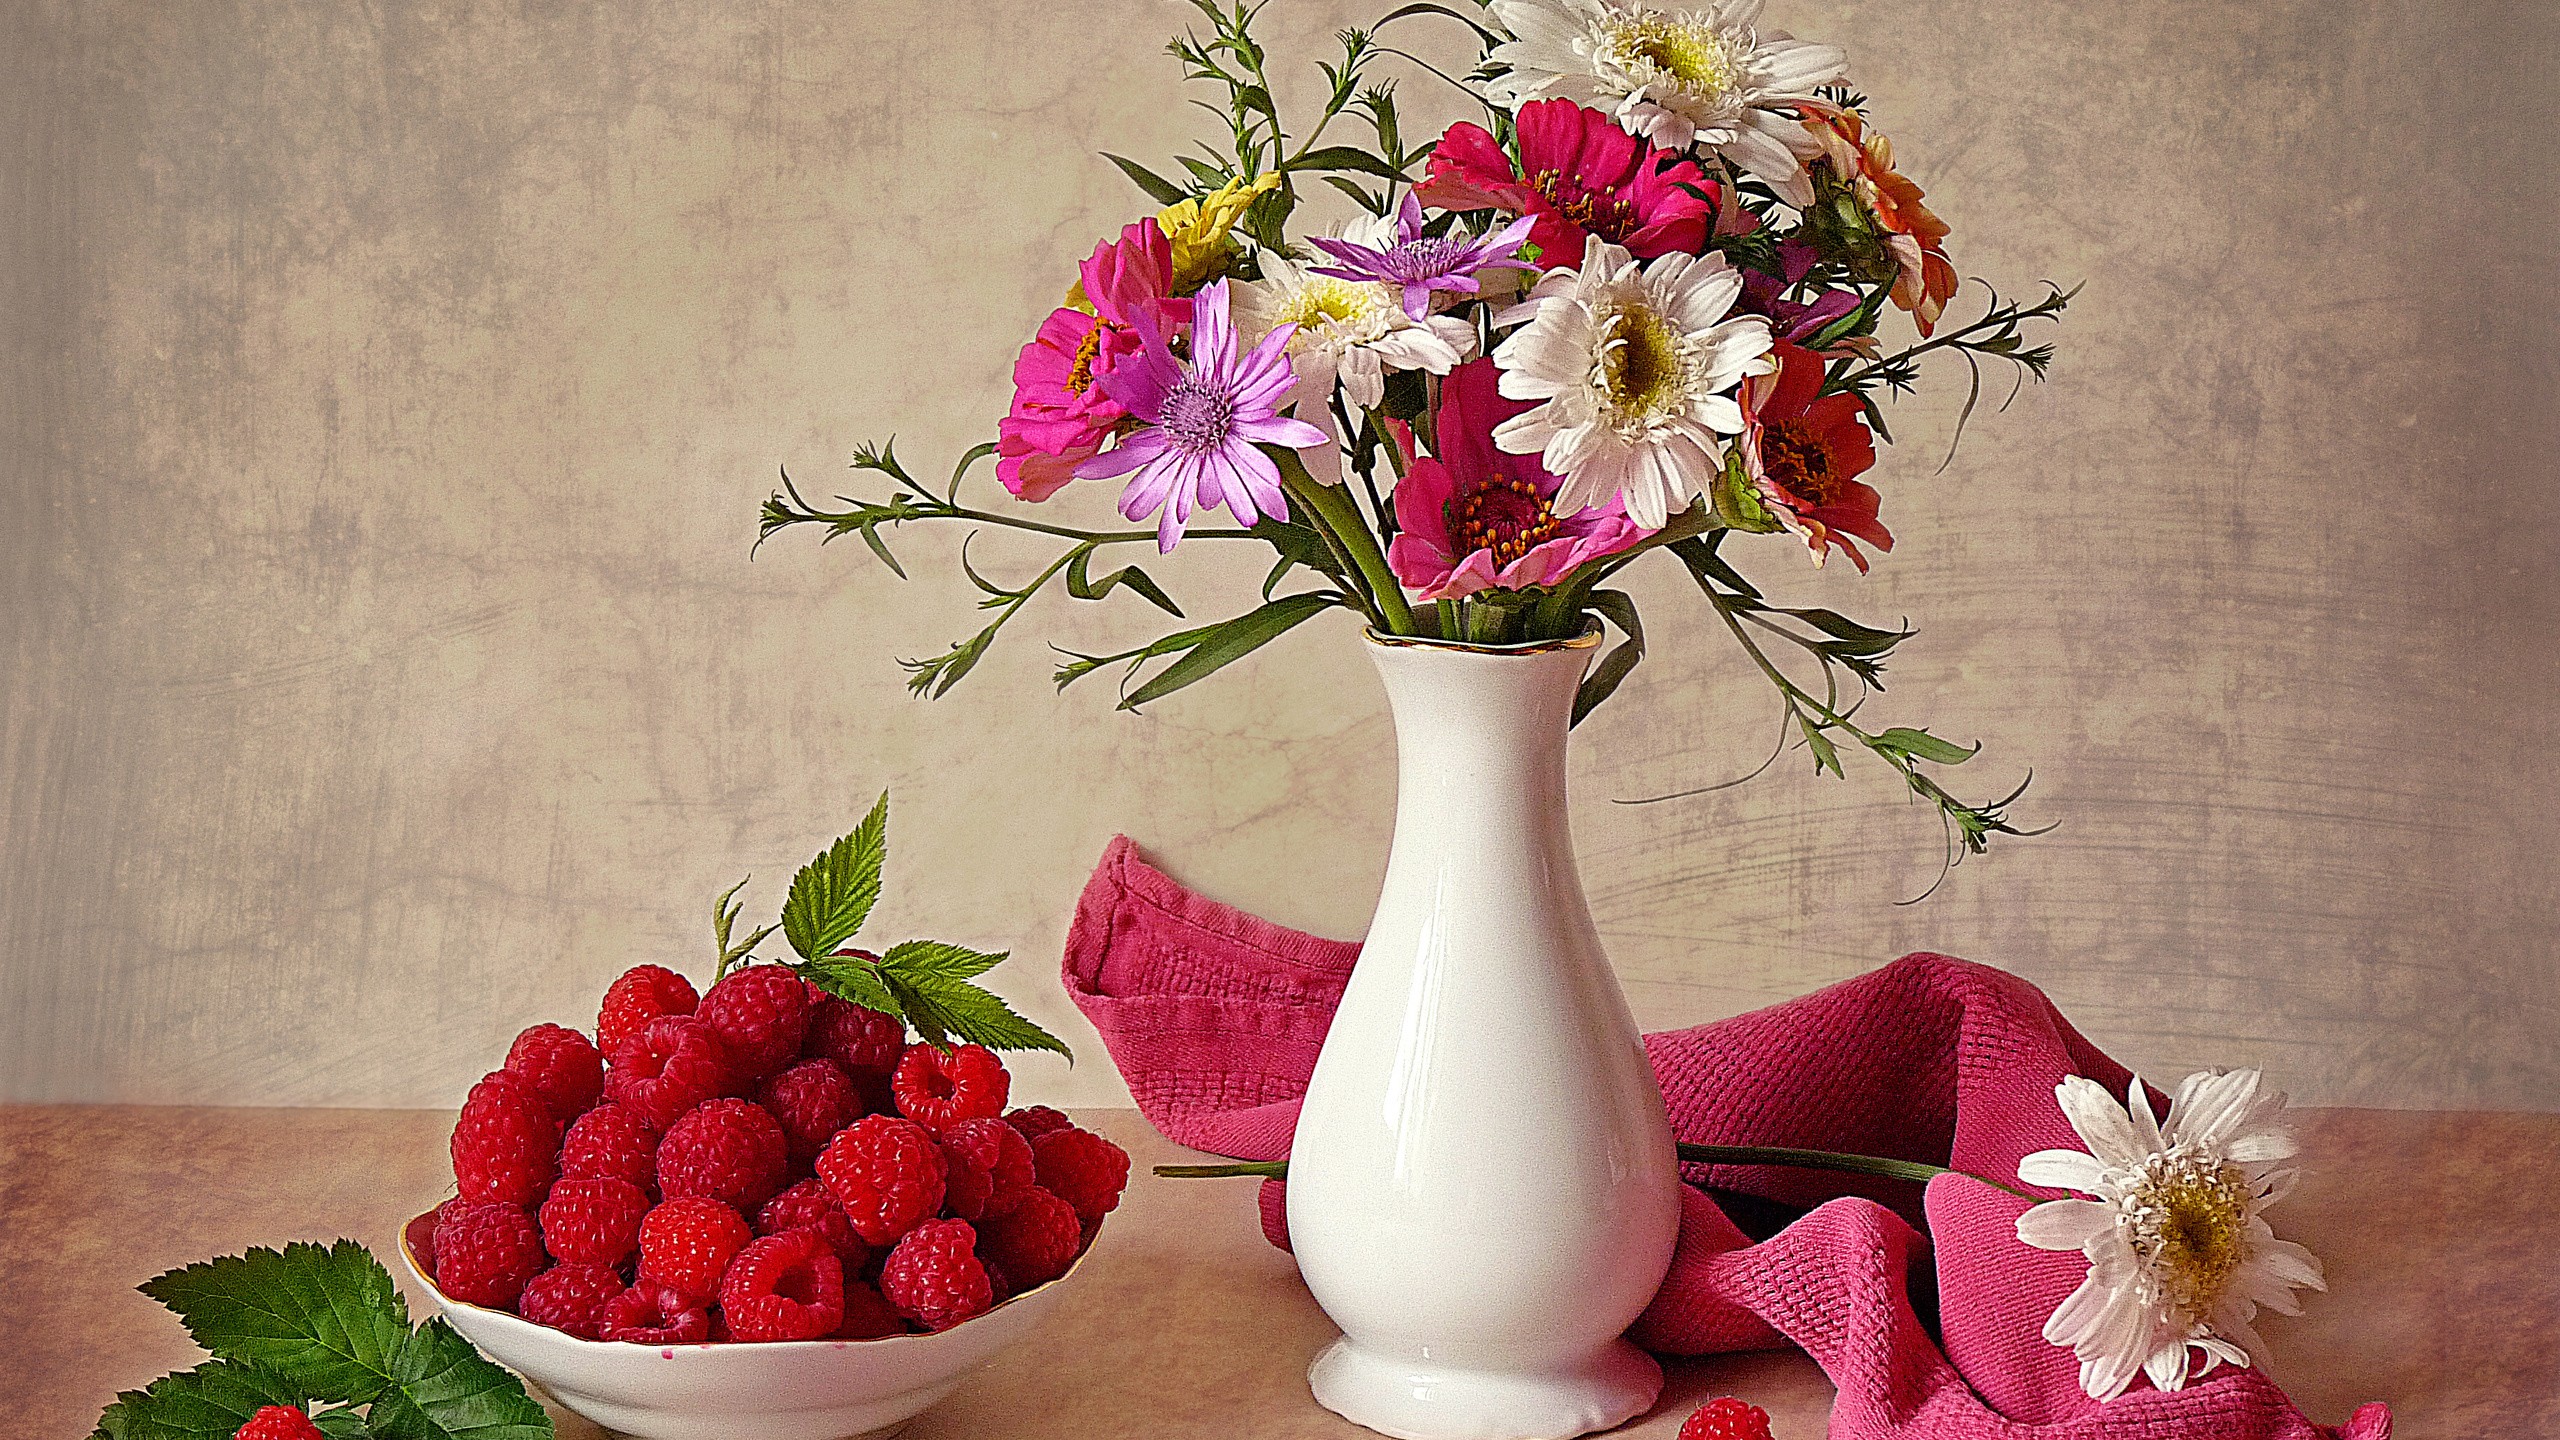 vases, Raspberries, Bouquets Wallpaper